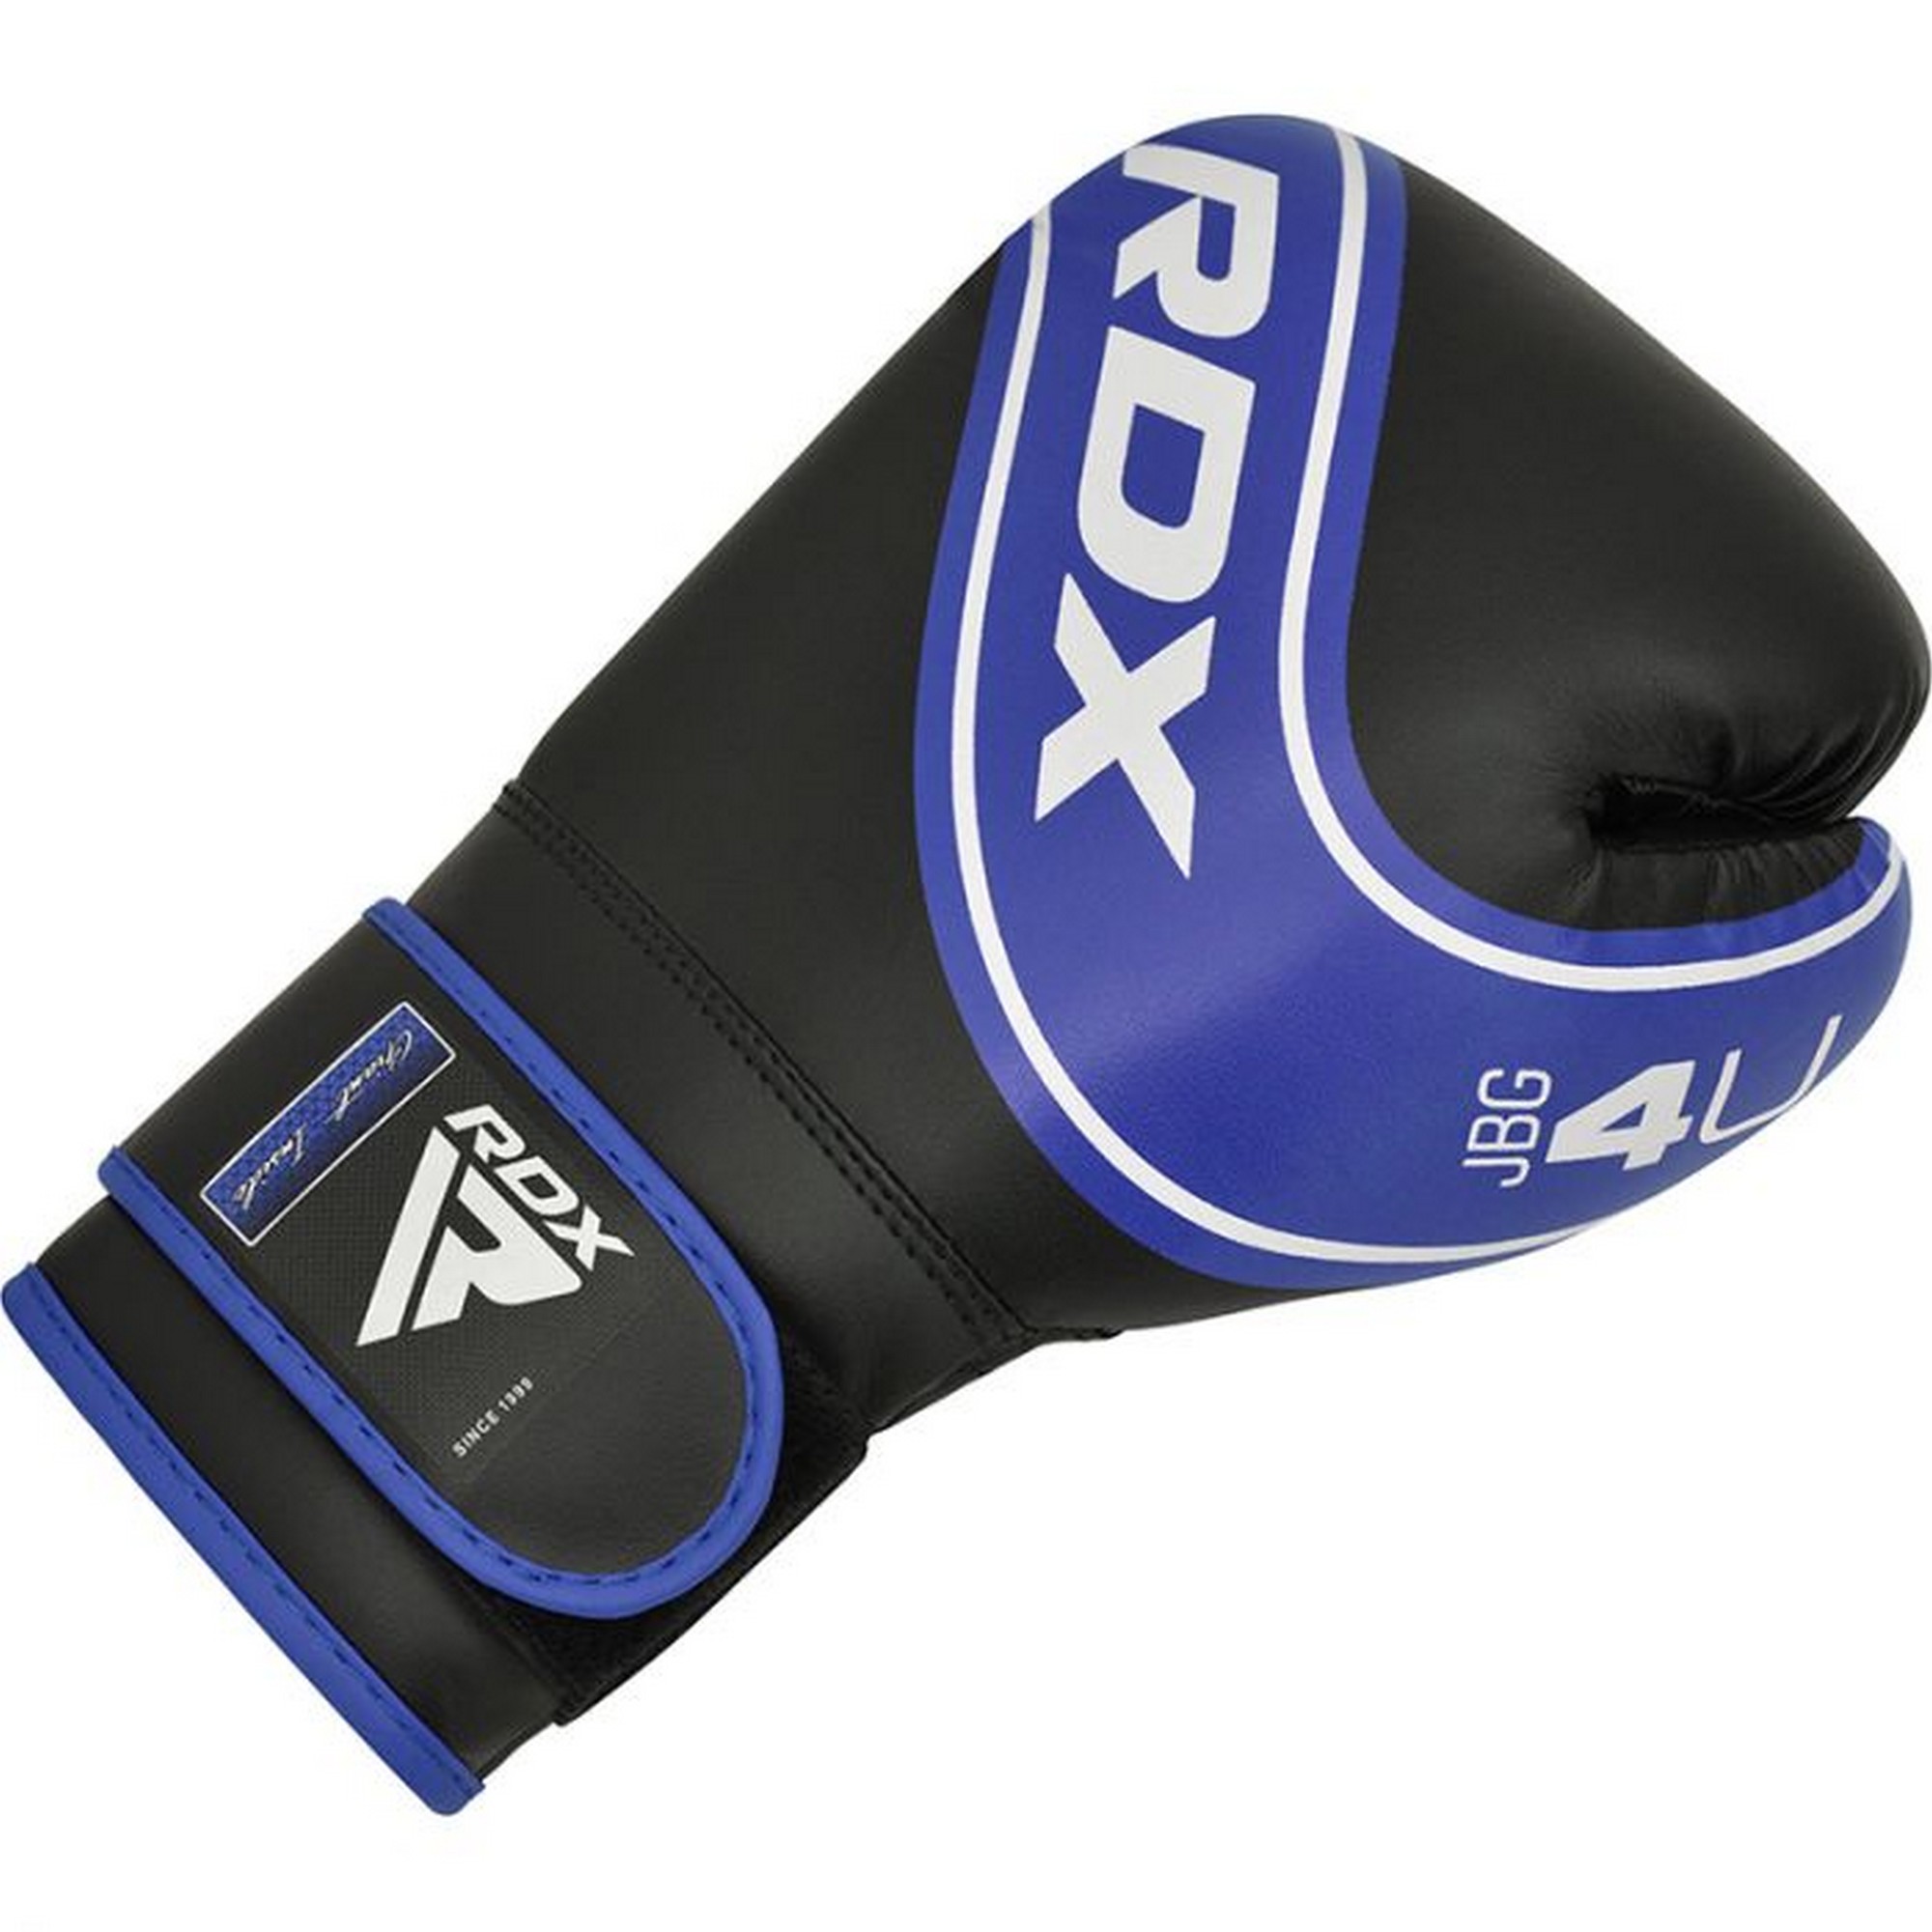 Перчатки детские RDX JBG-4U-4oz синий\черный 2000_2000